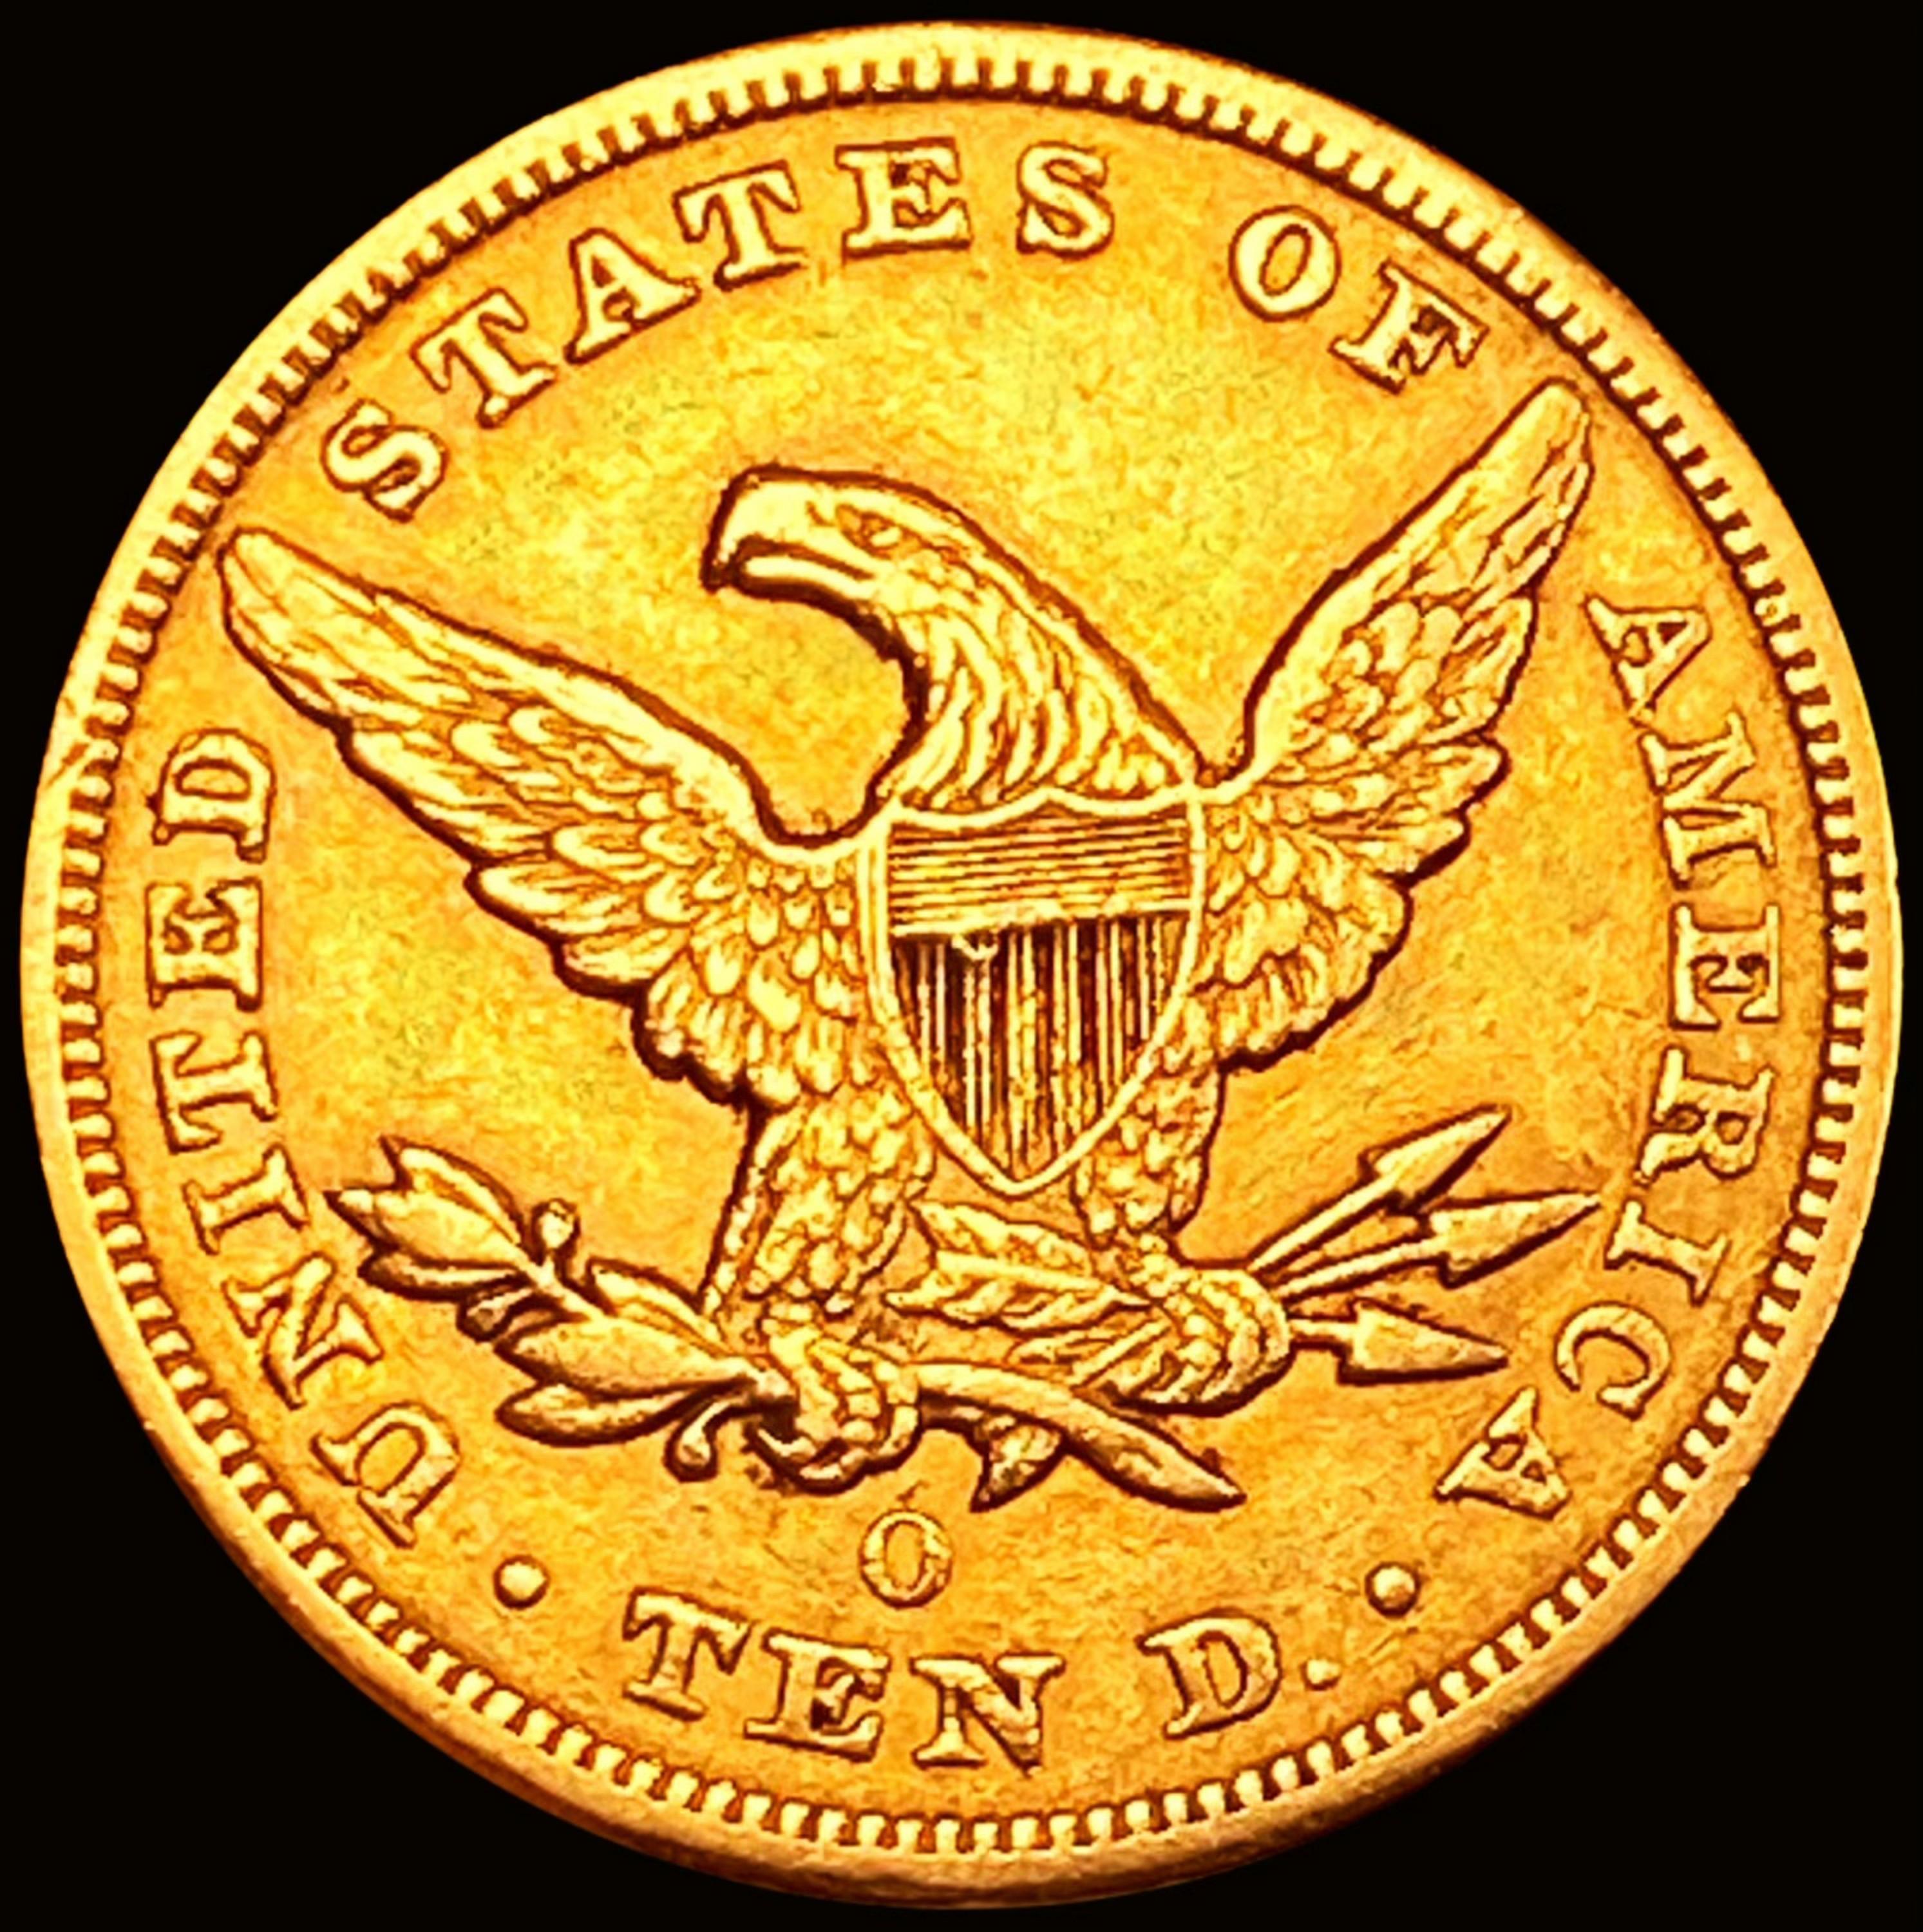 1851-O $10 Gold Eagle CHOICE AU